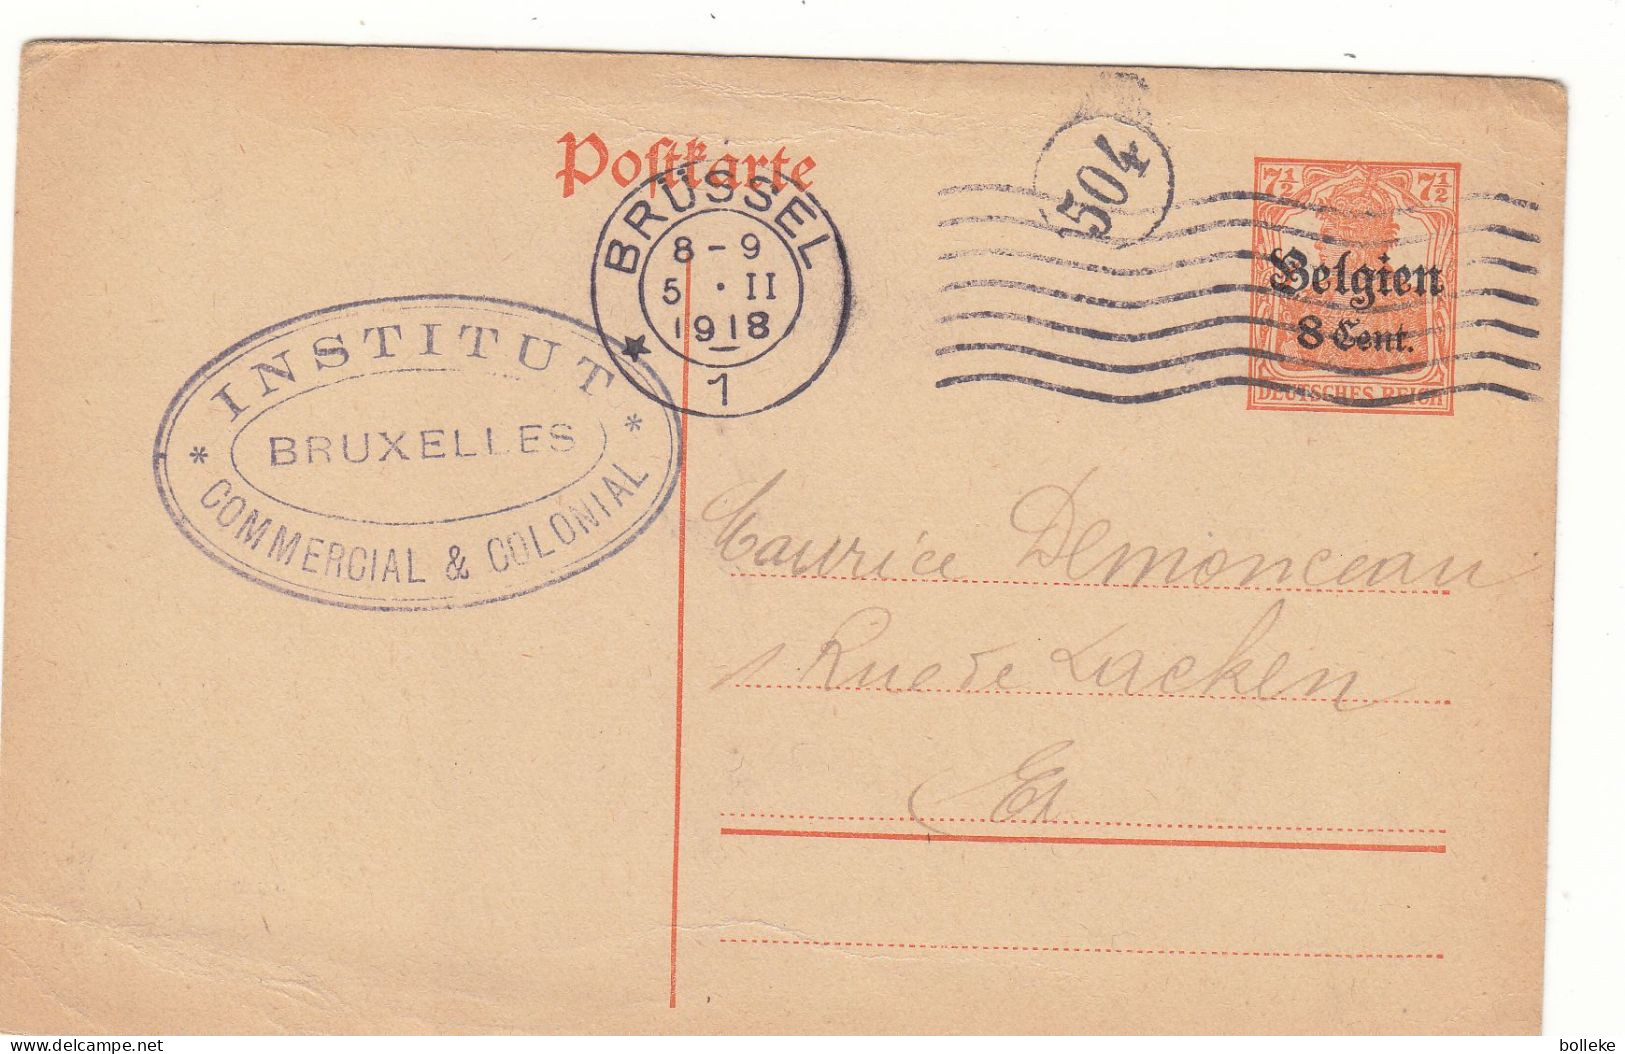 Belgique - Carte Postale De 1918 - Entier Postal - Oblit Brüssel - Cachet Du Facteur - - OC26/37 Etappengebied.